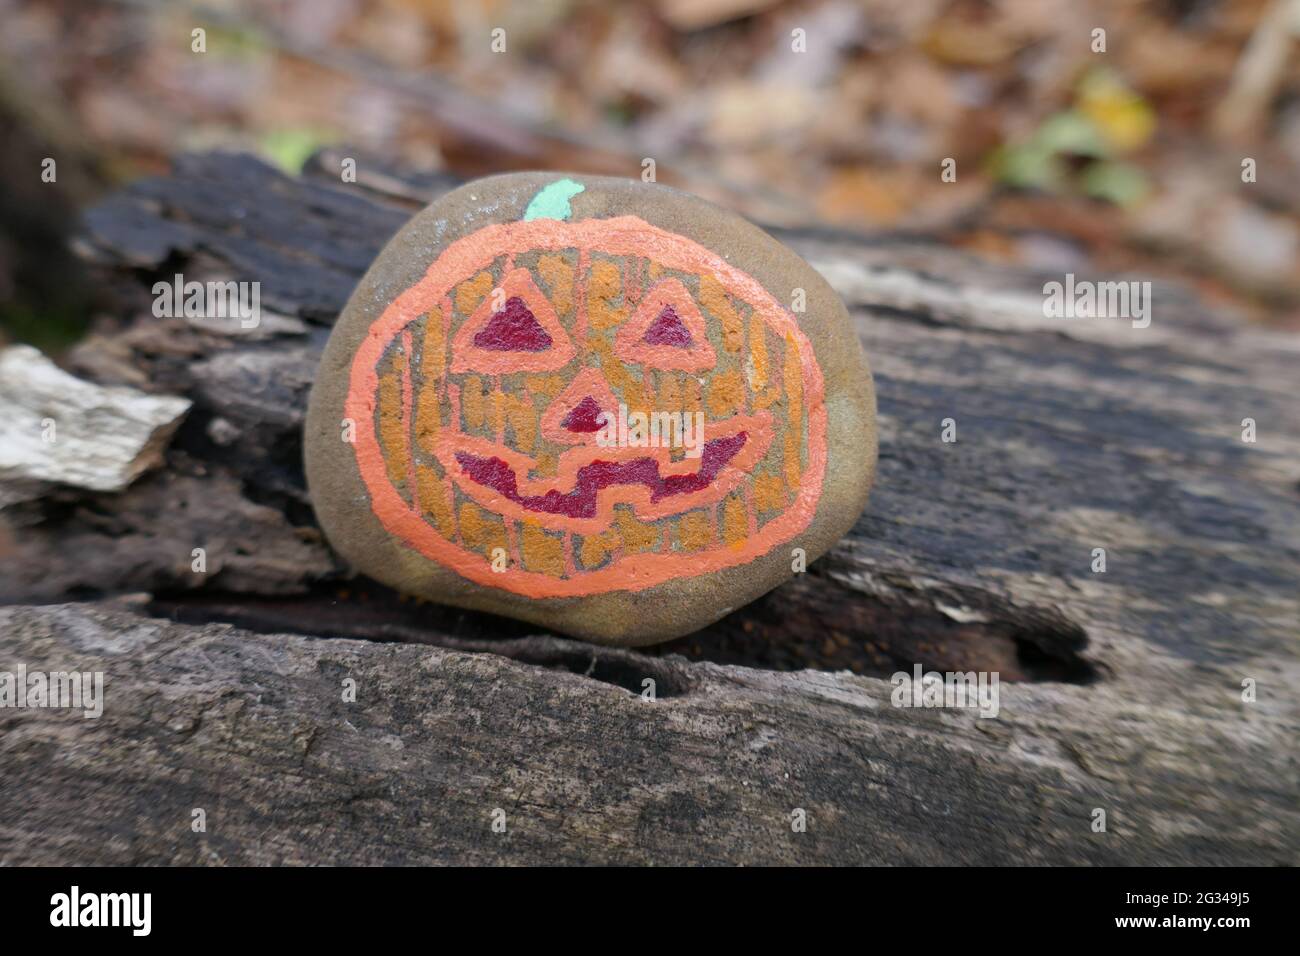 Orange jack o lantern painted on a kindness rock sitting on log Stock Photo